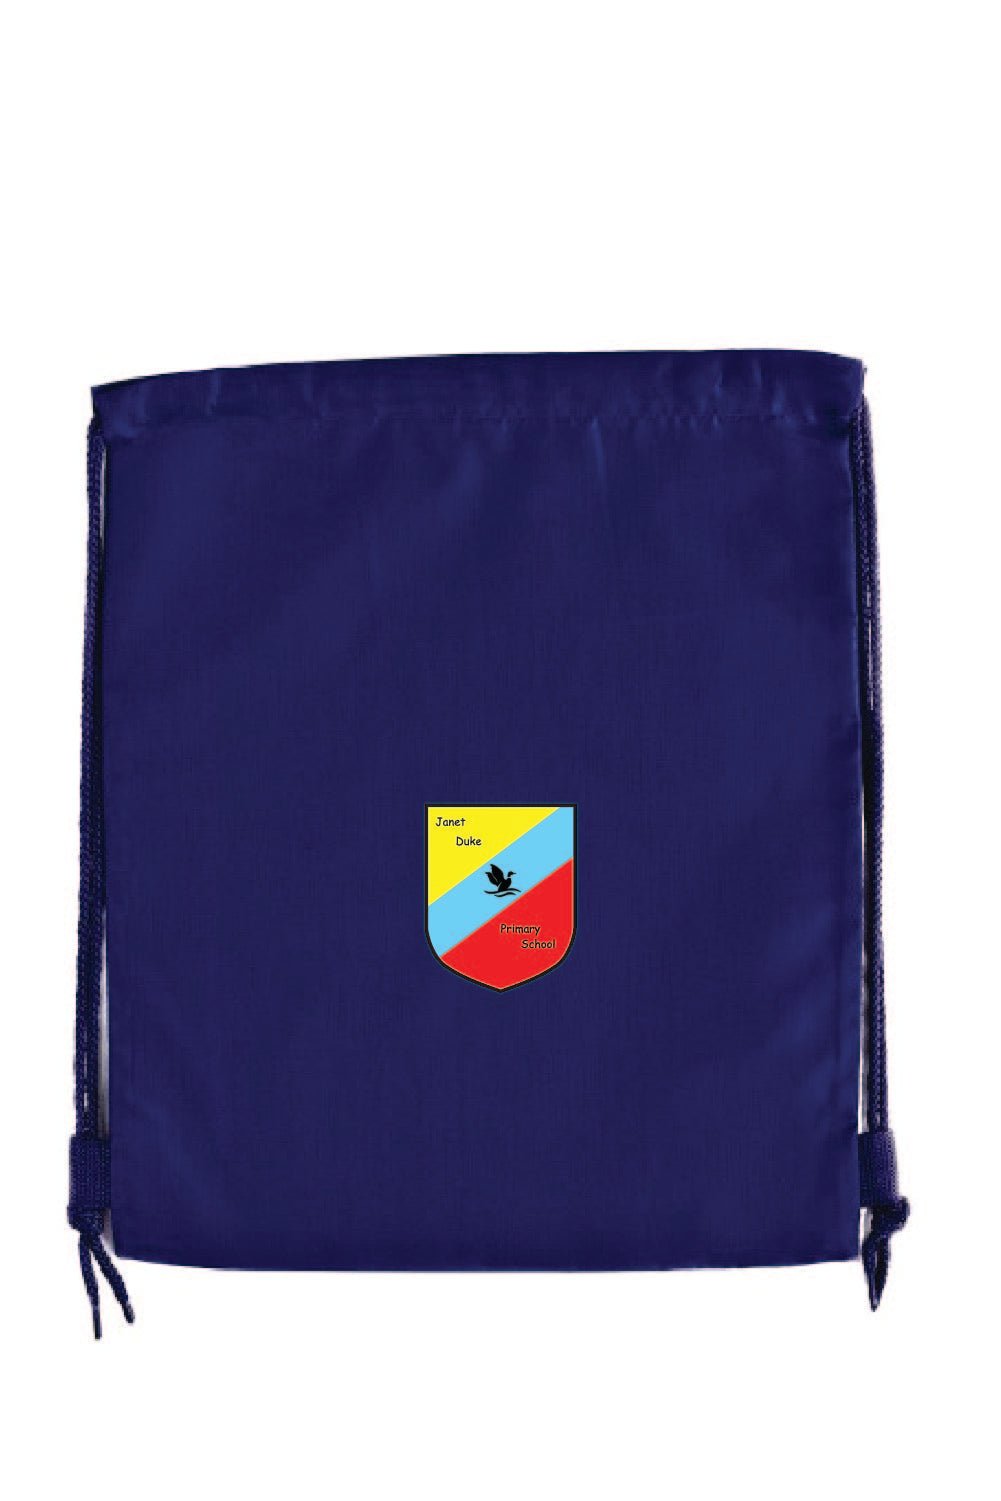 Janet Duke PE Bag - Uniformwise Schoolwear